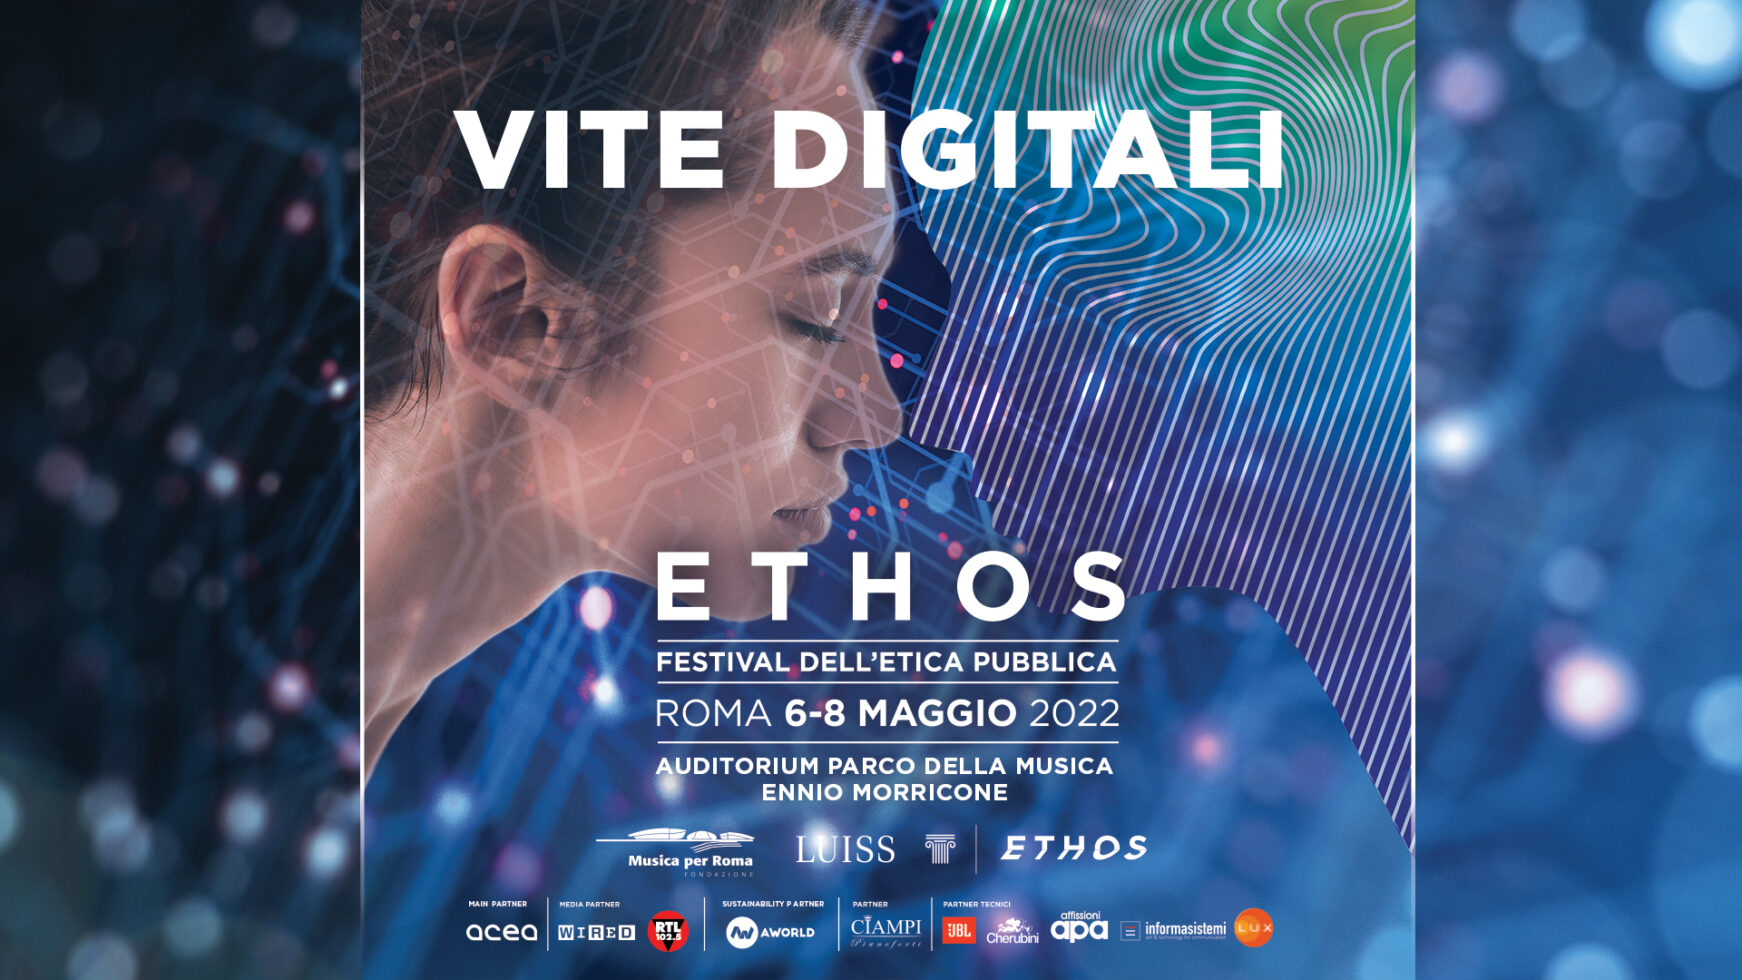 Ethos - Festival dell'Etica pubblica, il programma completo della I edizione zerkalo spettacolo